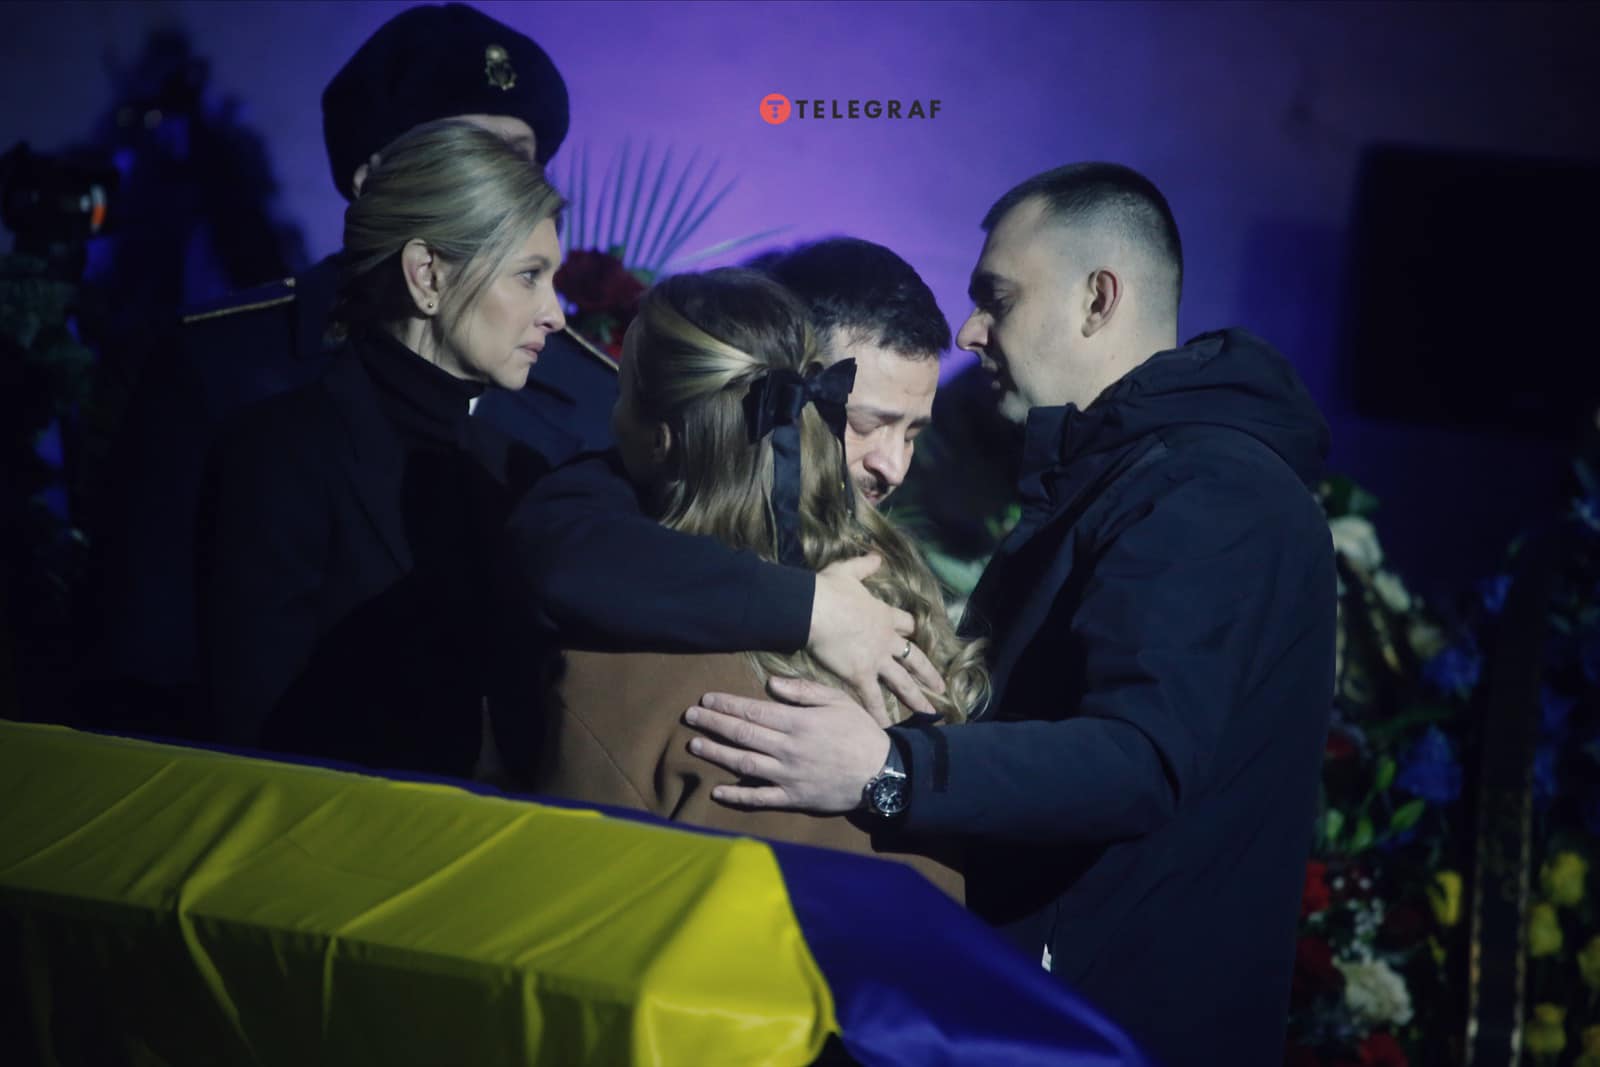 Прощання із загиблими під час авіакатастрофи. Фото: Yan Dobronosov